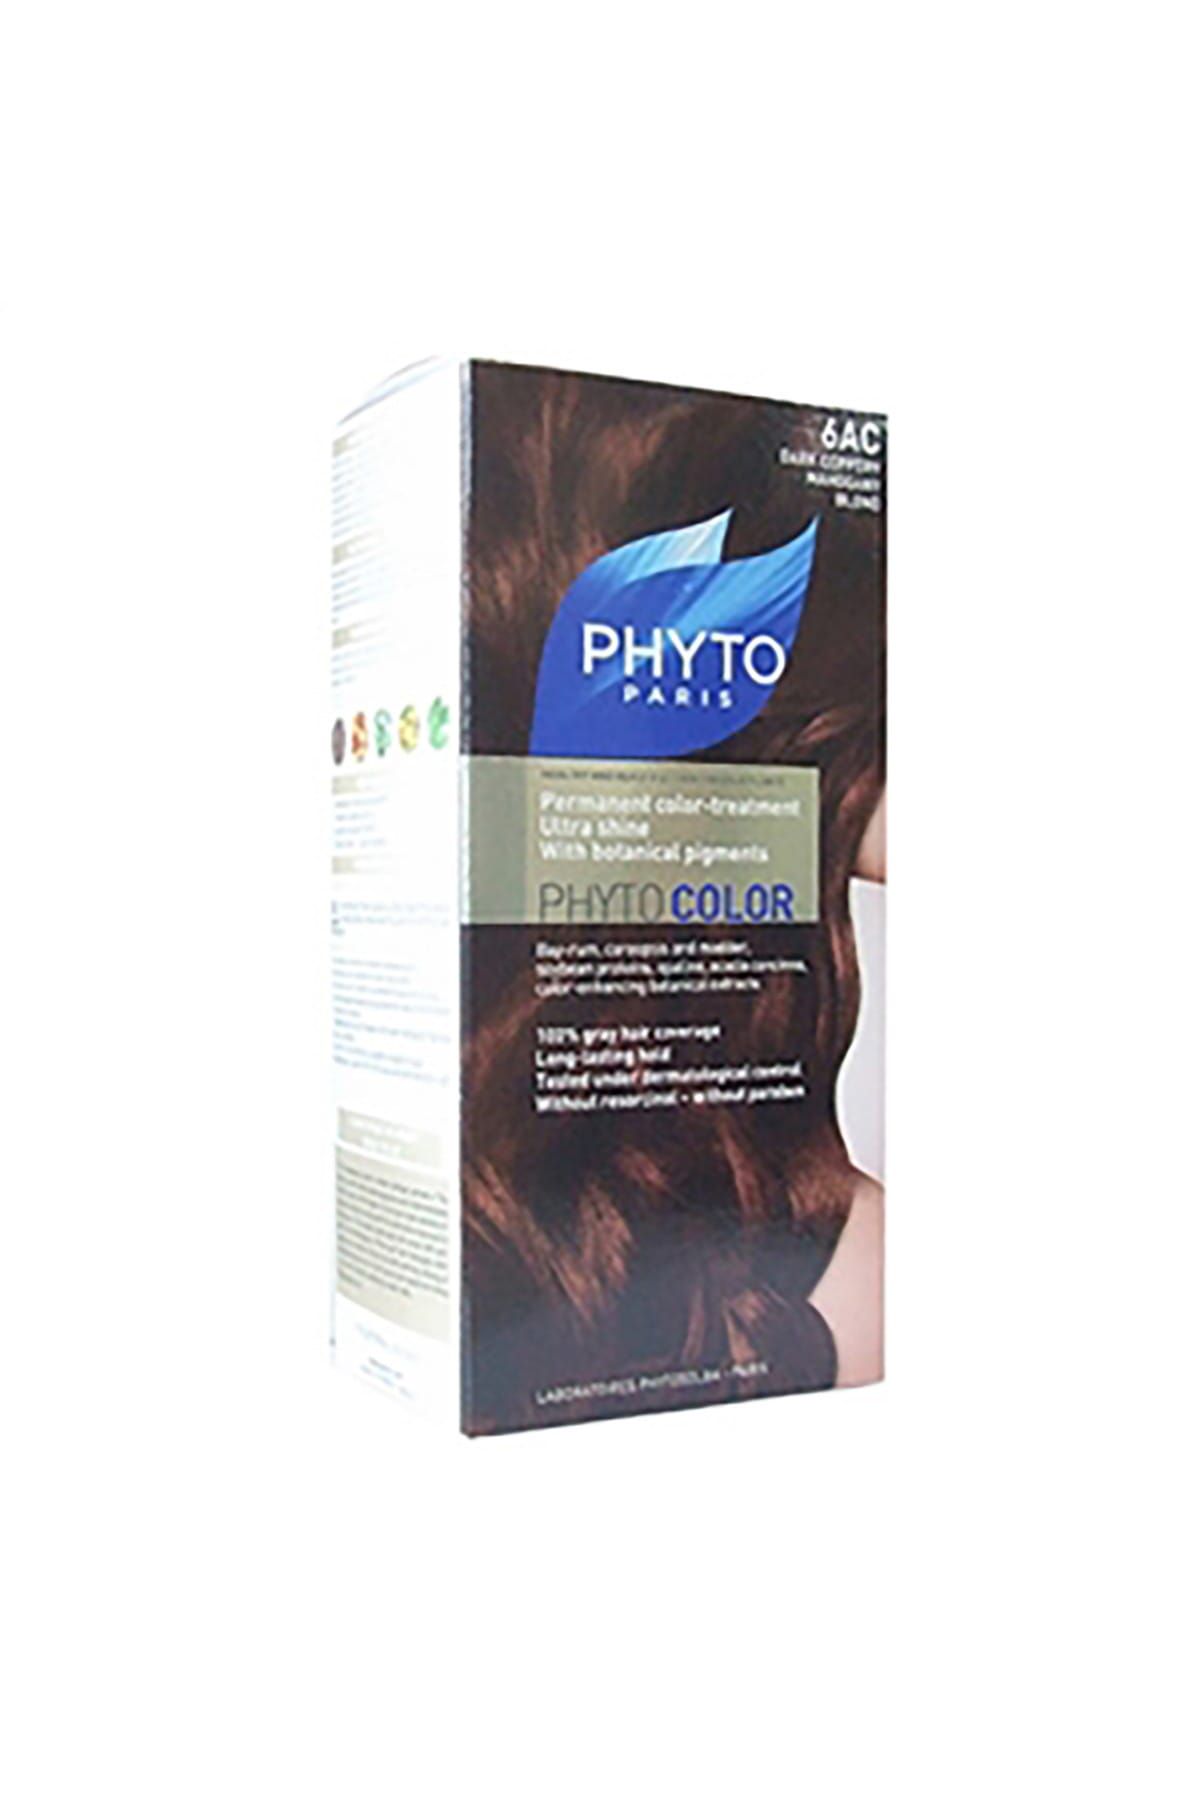 Phyto Bitkisel Saç Boyası - Phytocolor 6AC Akaju Bakır Koyu Sarı 0618059109690